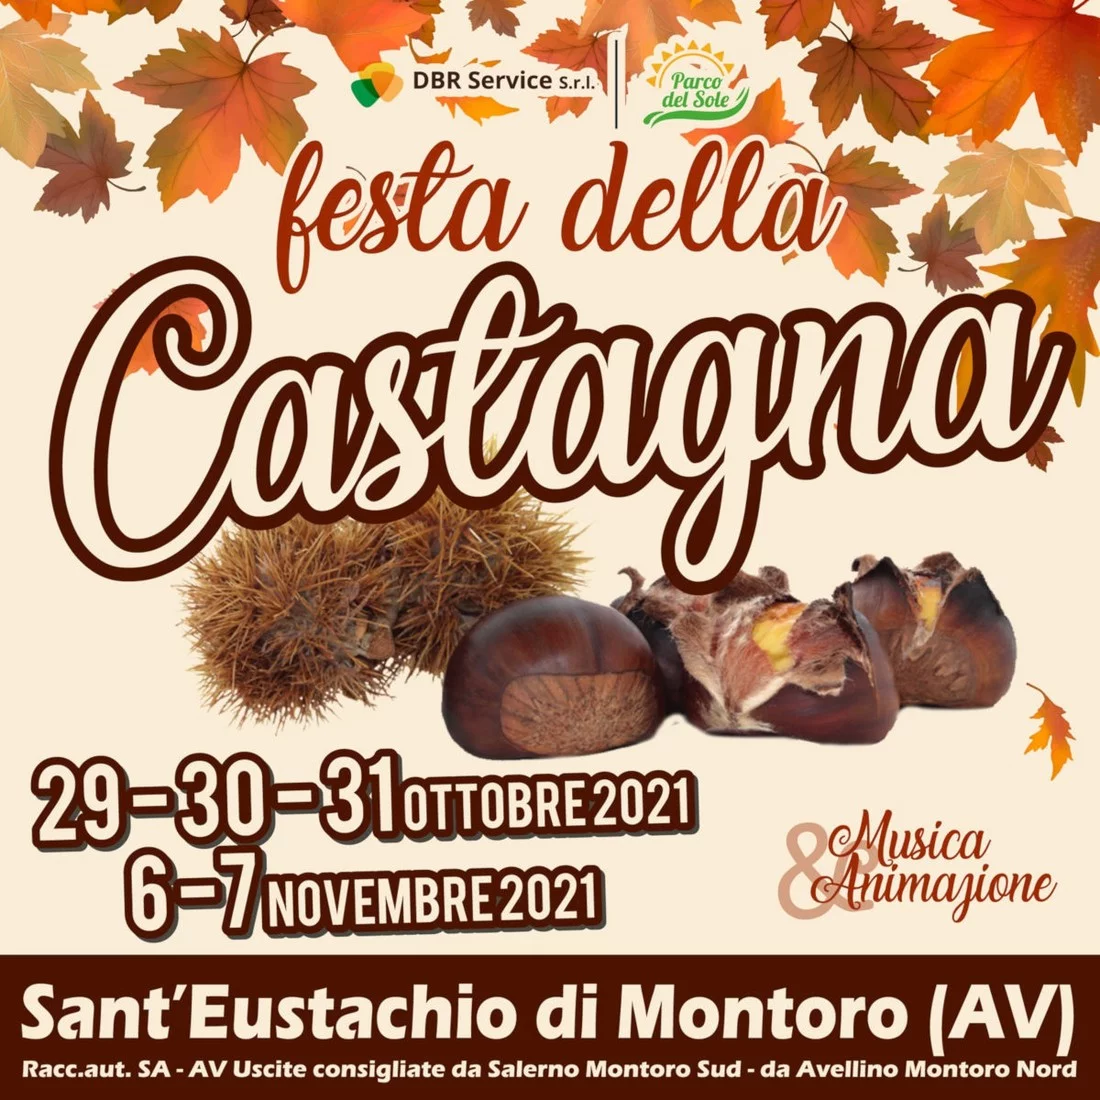 Festa della Castagna a Eustachio di Montoro (AV)